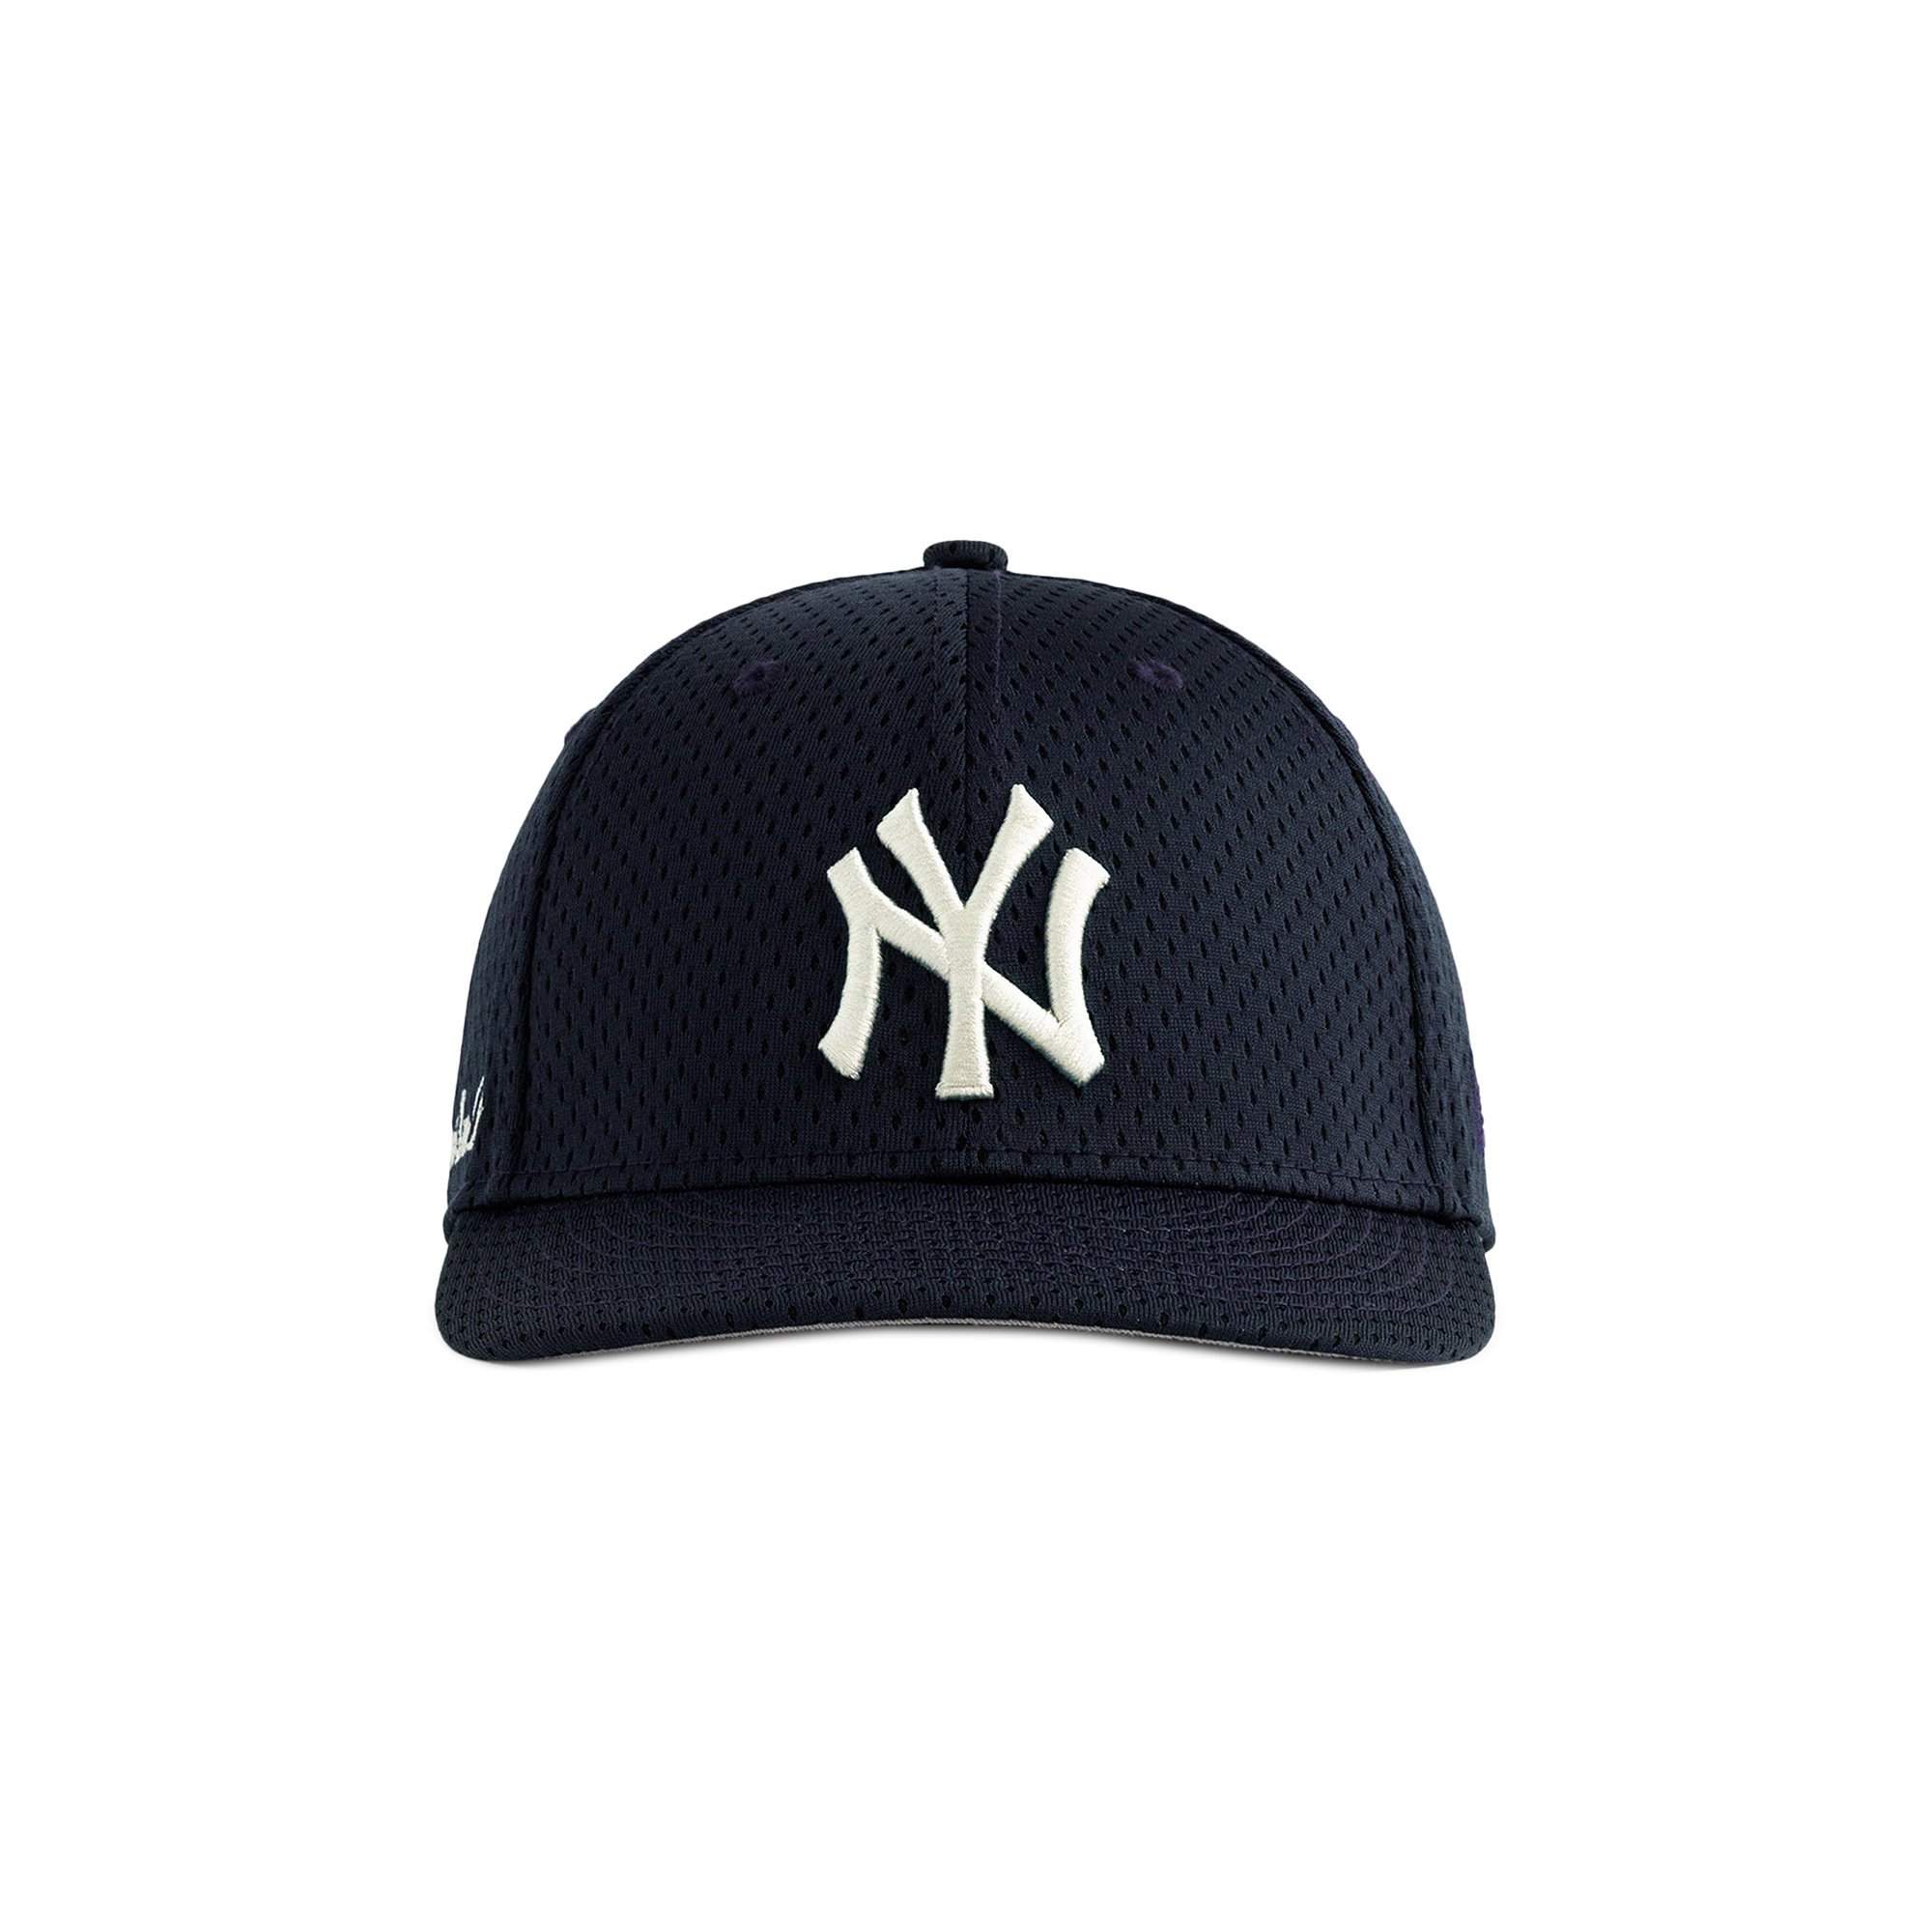 Aime Leon dore Yankees cap new era mesh-